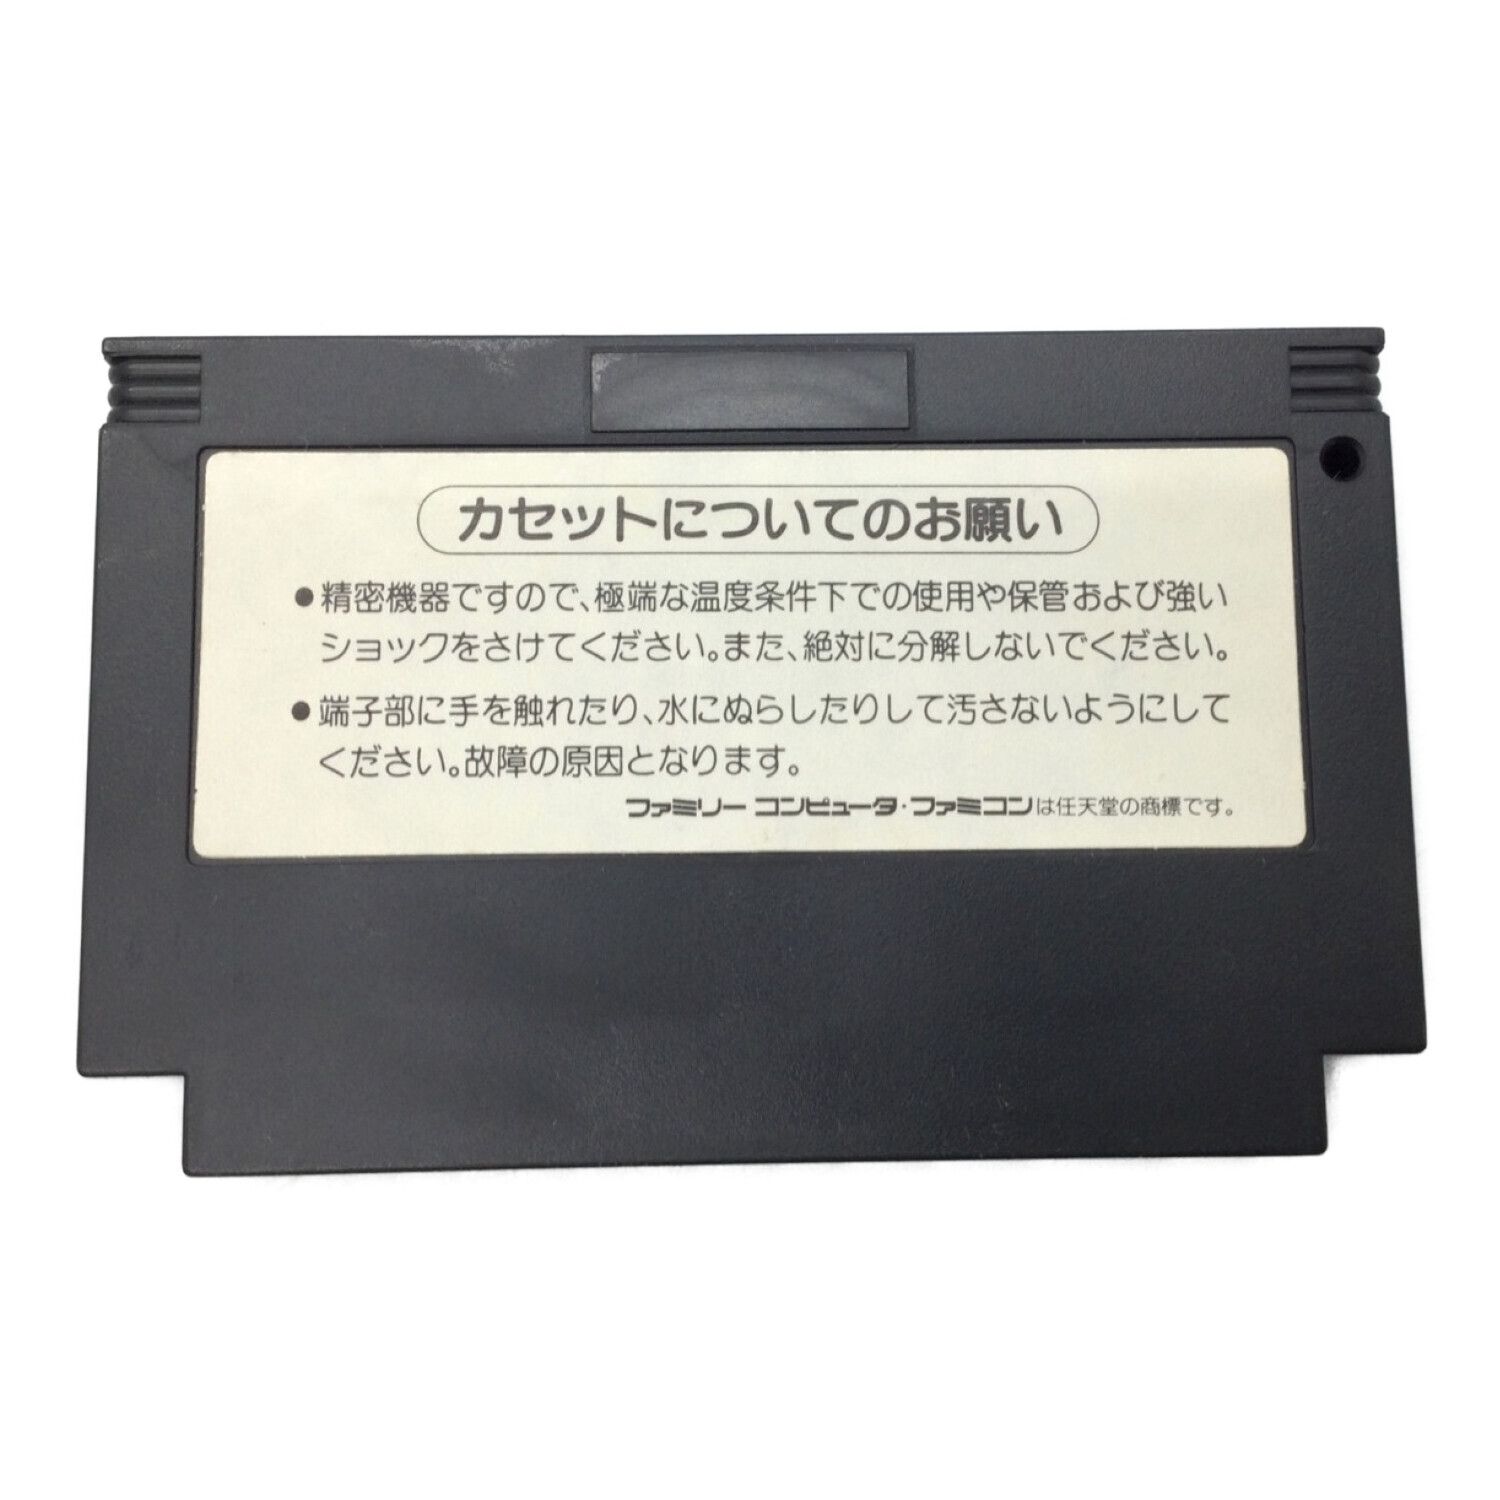 KONAMI (コナミ) ファミコン用ソフト クライシスフォース(箱説なし 